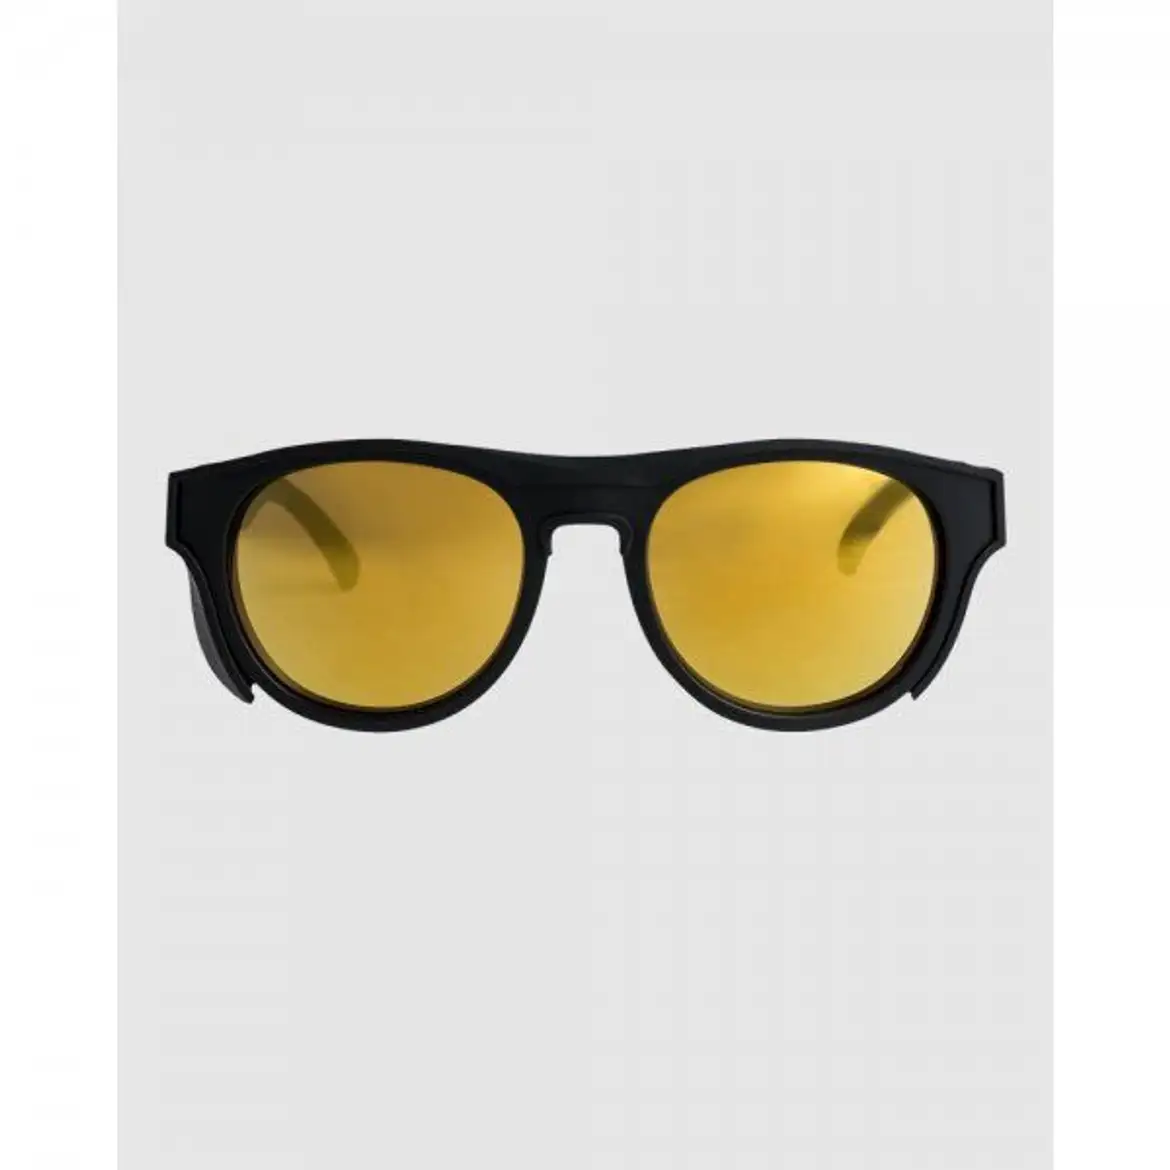 퀵실버-3889582 Quiksilver Eliminator Sunglasses For Men - BLACK